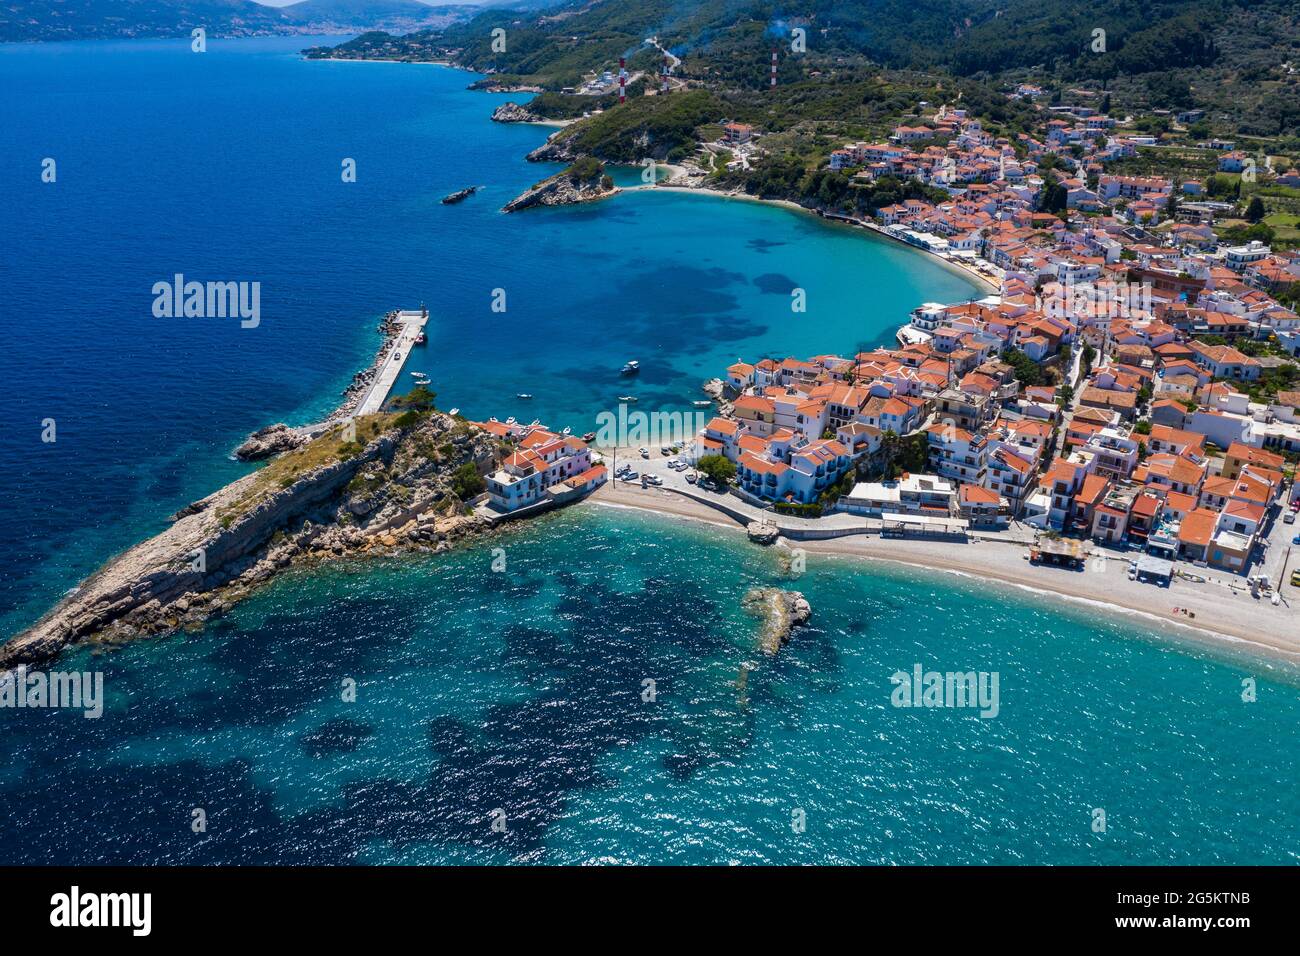 Vue aérienne, vue sur le village avec plage de galets et port, Kokkari, Samos, Grèce, Europe Banque D'Images